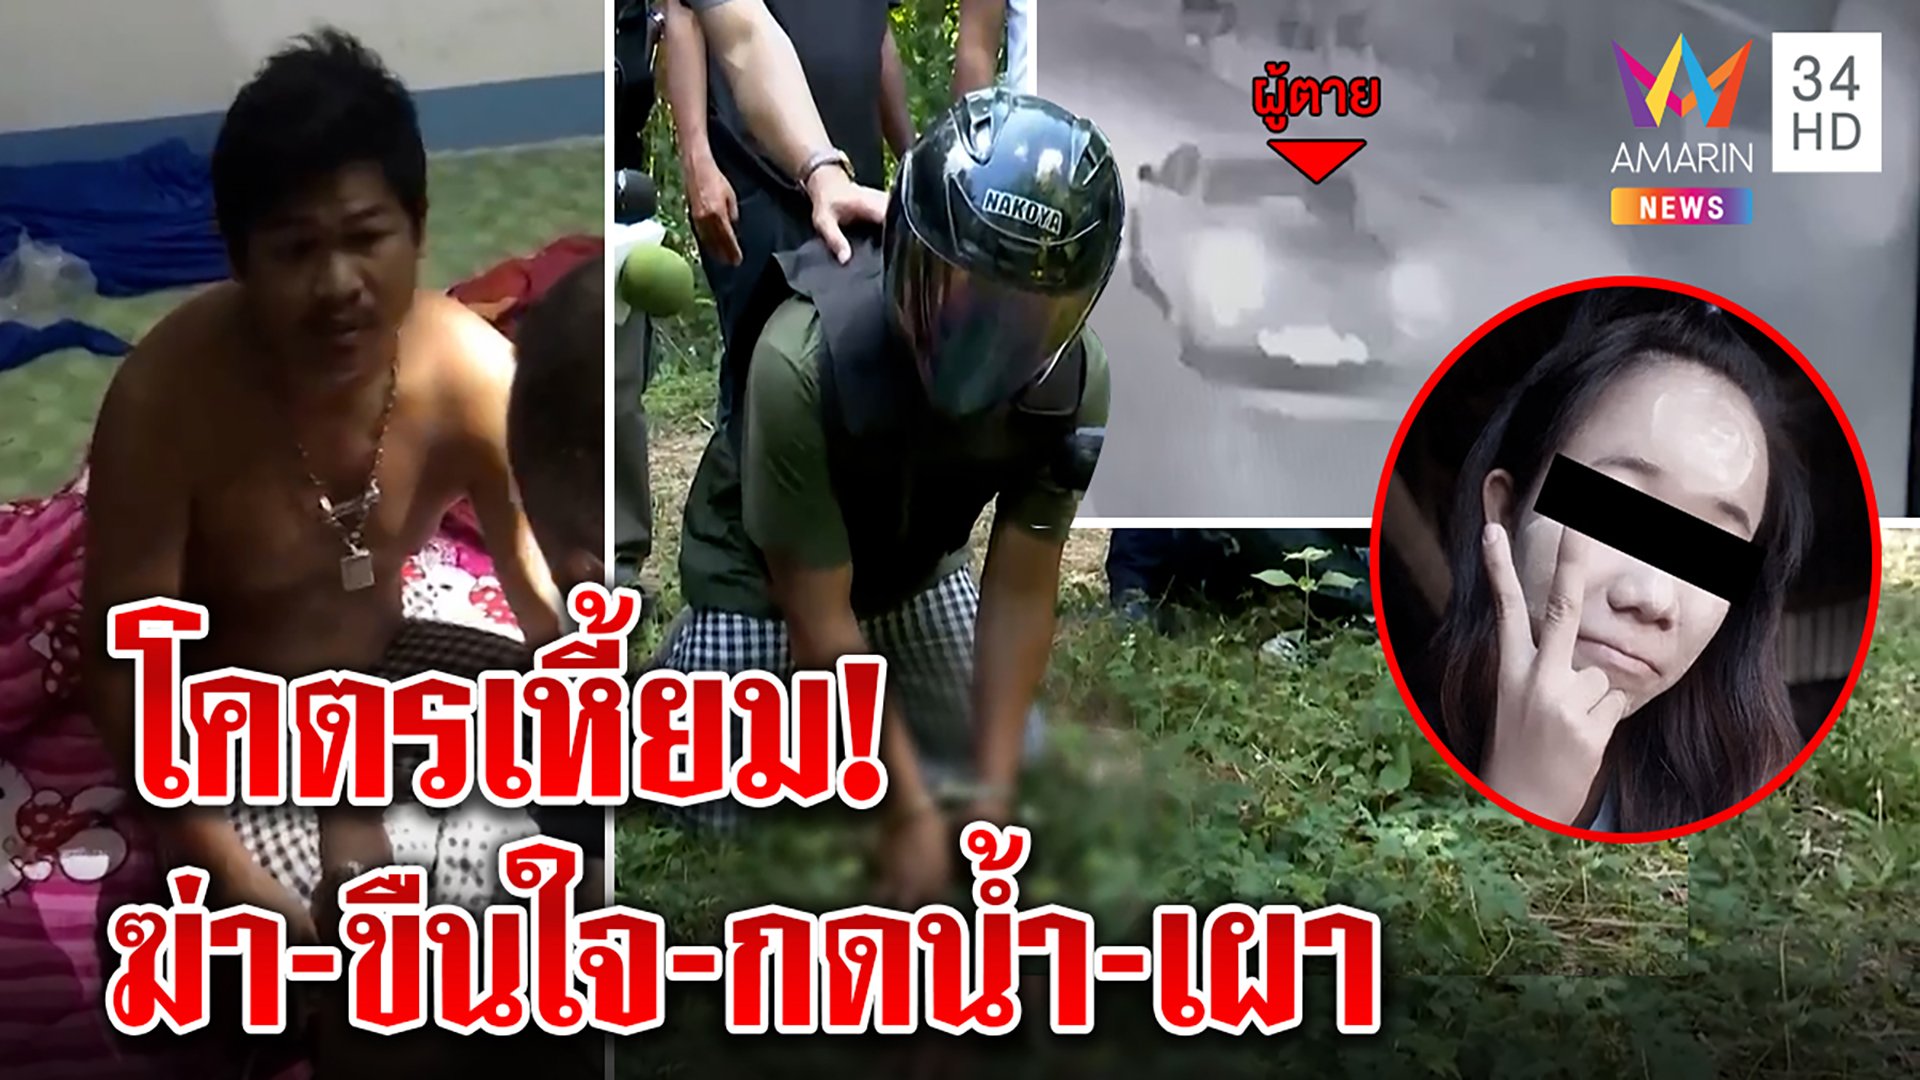 ลากคอฆาตกรเหี้ยม ขืนใจสาวพม่าจับกดน้ำ เมียท้องช็อกผัวหนีไปงมศพมาเผา | ทุบโต๊ะข่าว | 19 พ.ย. 64 | AMARIN TVHD34